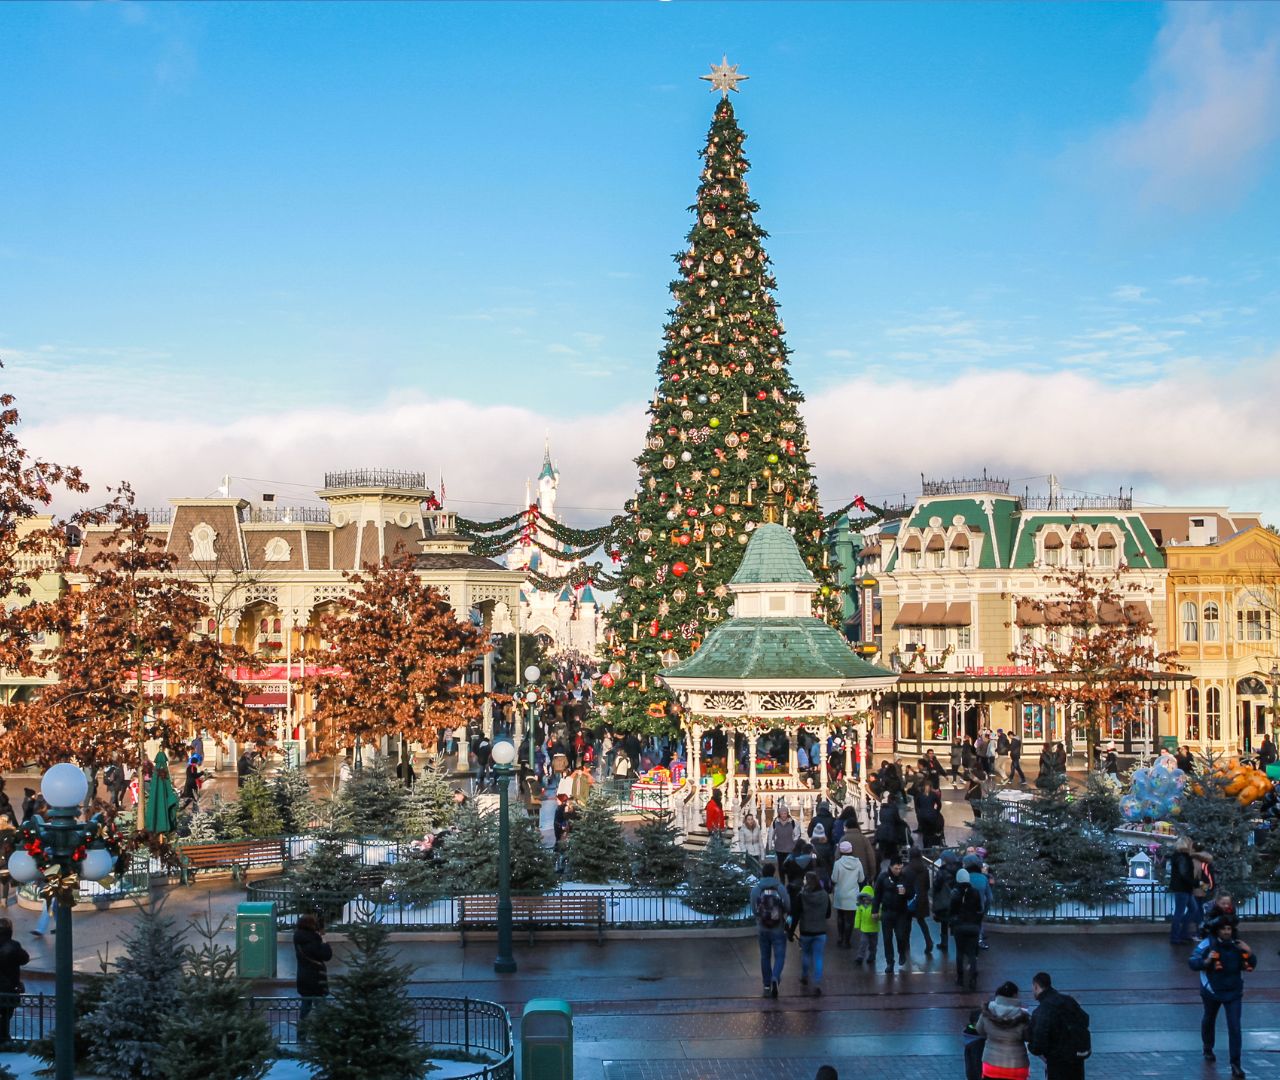 Disneyland Paris Winter Wonderland